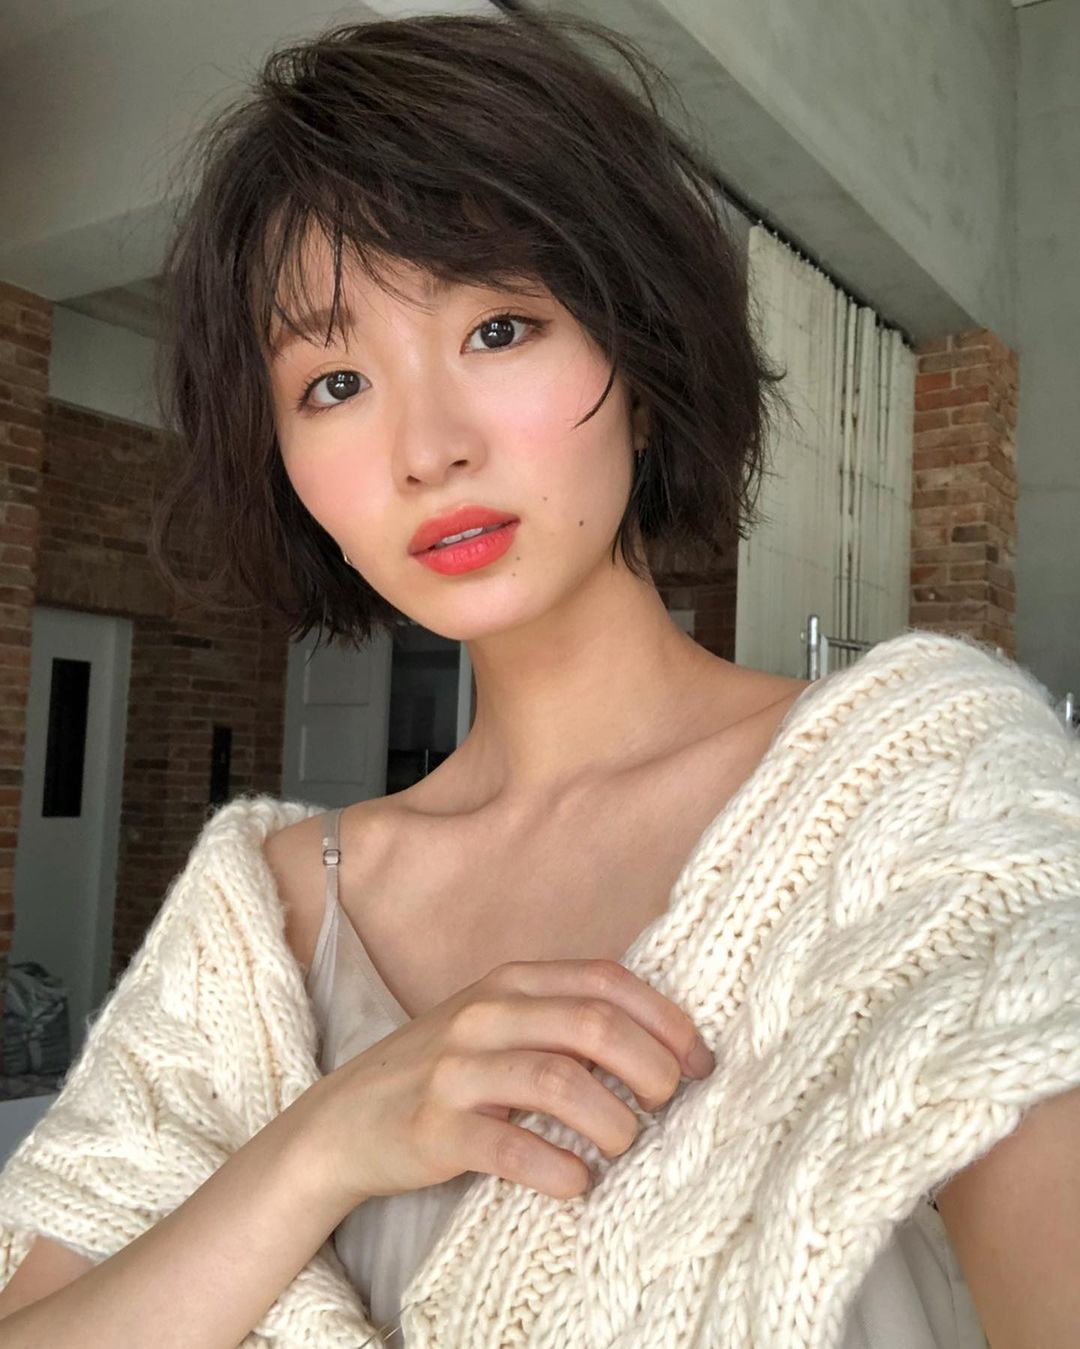 日系时尚杂志模特「冈崎纱绘」清甜笑容亲和力十足完全就是女友理想型